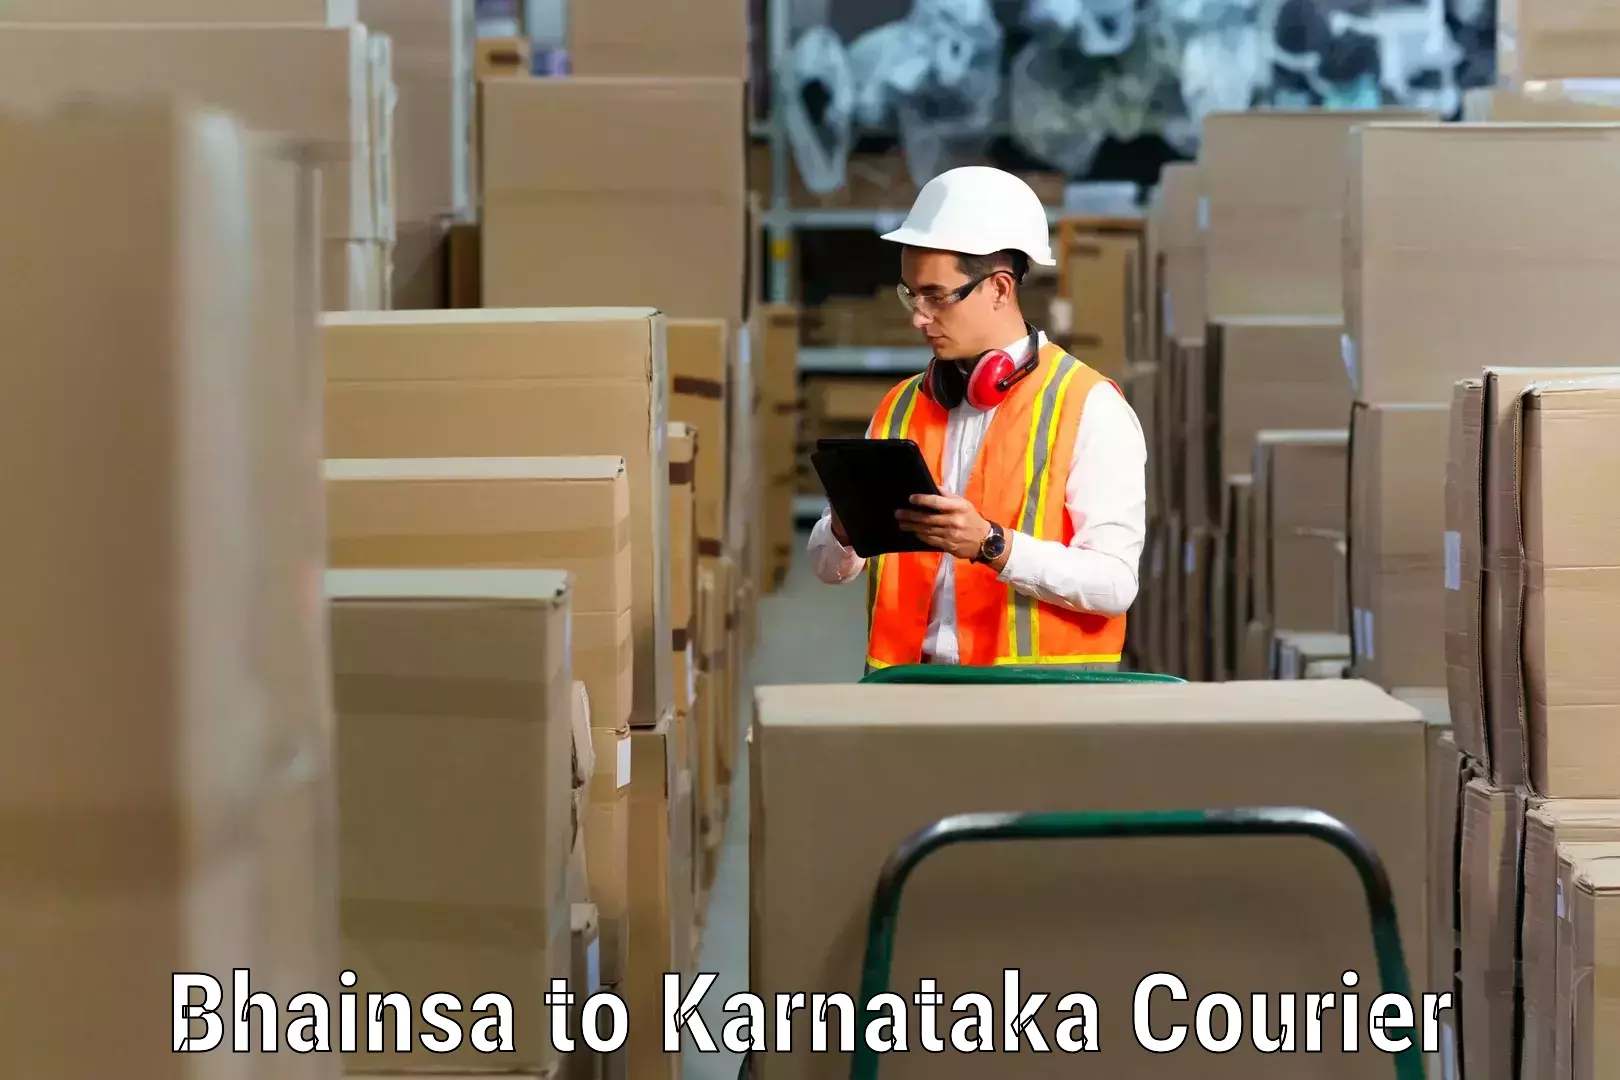 Trusted moving company Bhainsa to Karnataka